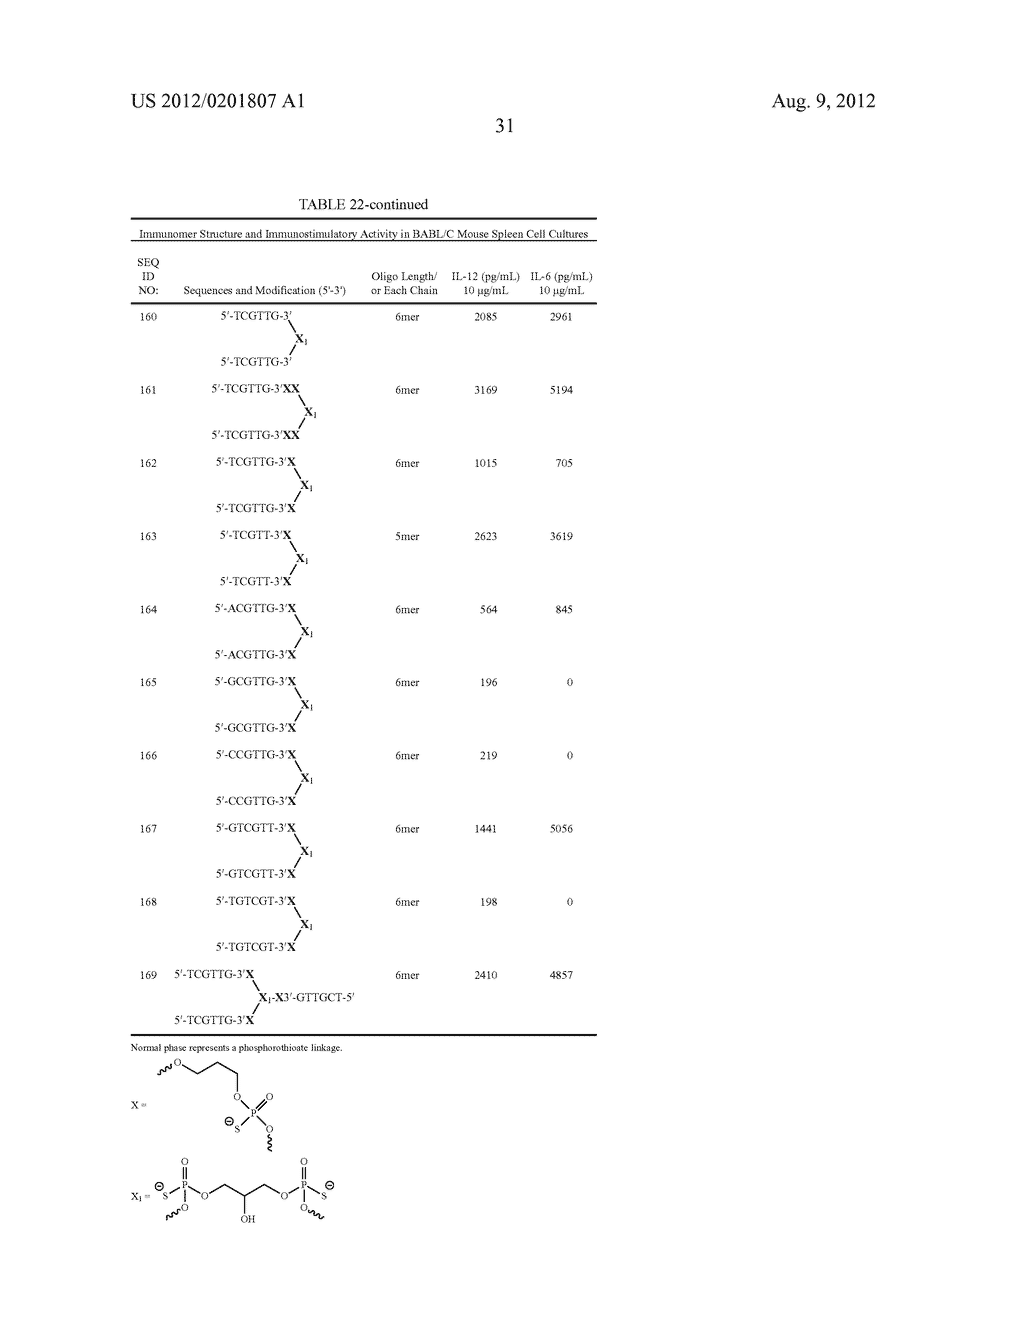 MODULATION OF IMMUNOSTIMULATORY PROPERTIES OF OLIGONUCLEOTIDE-BASED     COMPOUNDS BY UTILIZING MODIFIED IMMUNOSTIMULATORY DINUCLEOTIDES - diagram, schematic, and image 62